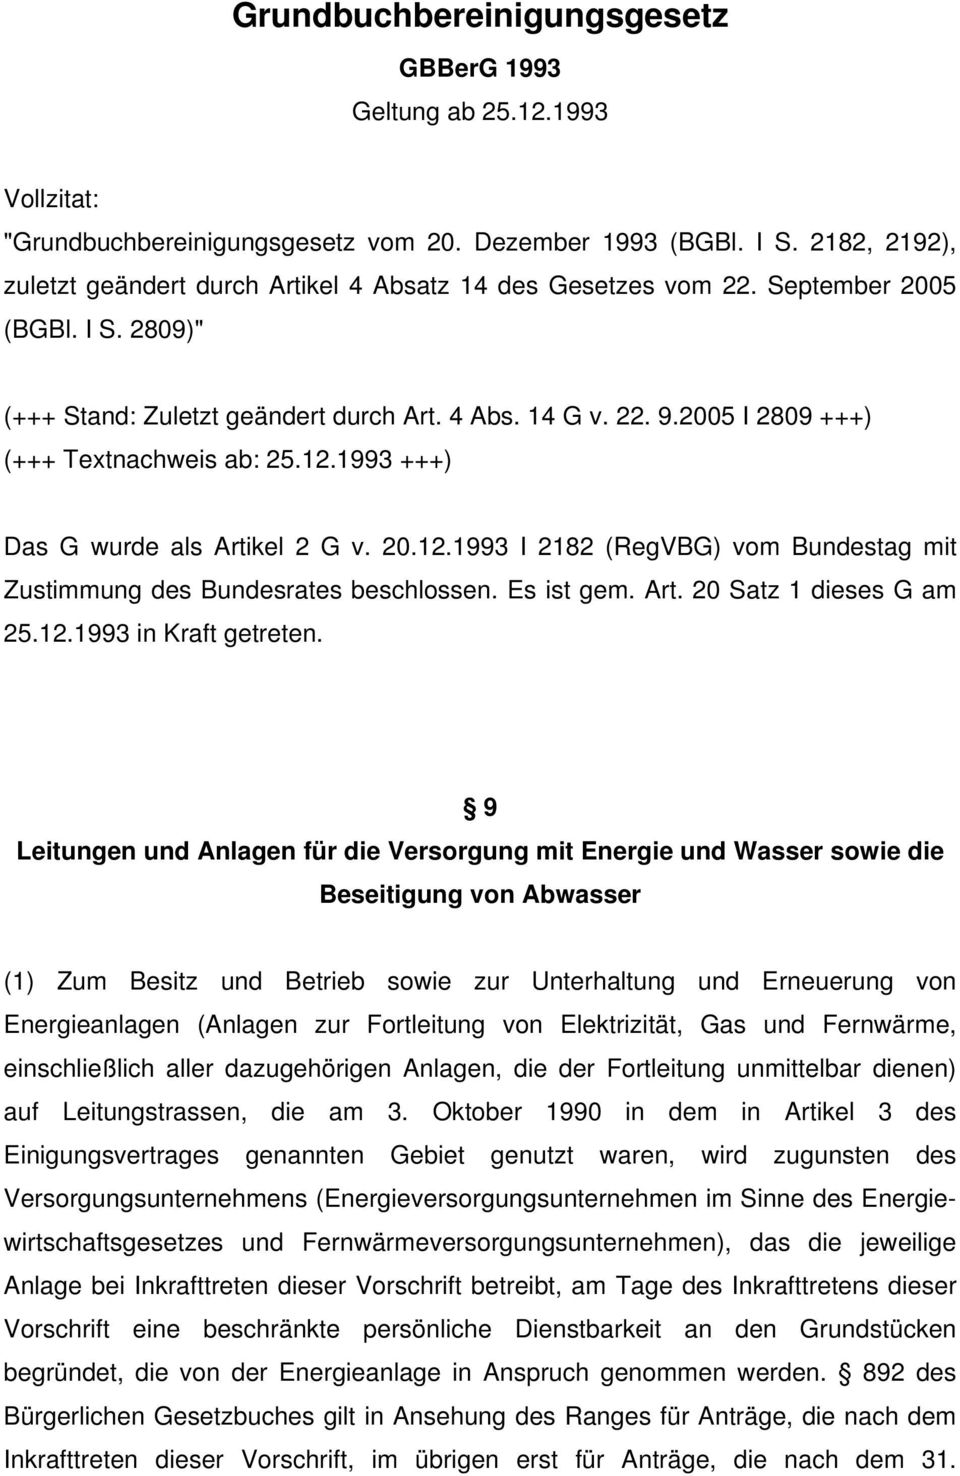 2005 I 2809 +++) (+++ Textnachweis ab: 25.12.1993 +++) Das G wurde als Artikel 2 G v. 20.12.1993 I 2182 (RegVBG) vom Bundestag mit Zustimmung des Bundesrates beschlossen. Es ist gem. Art. 20 Satz 1 dieses G am 25.